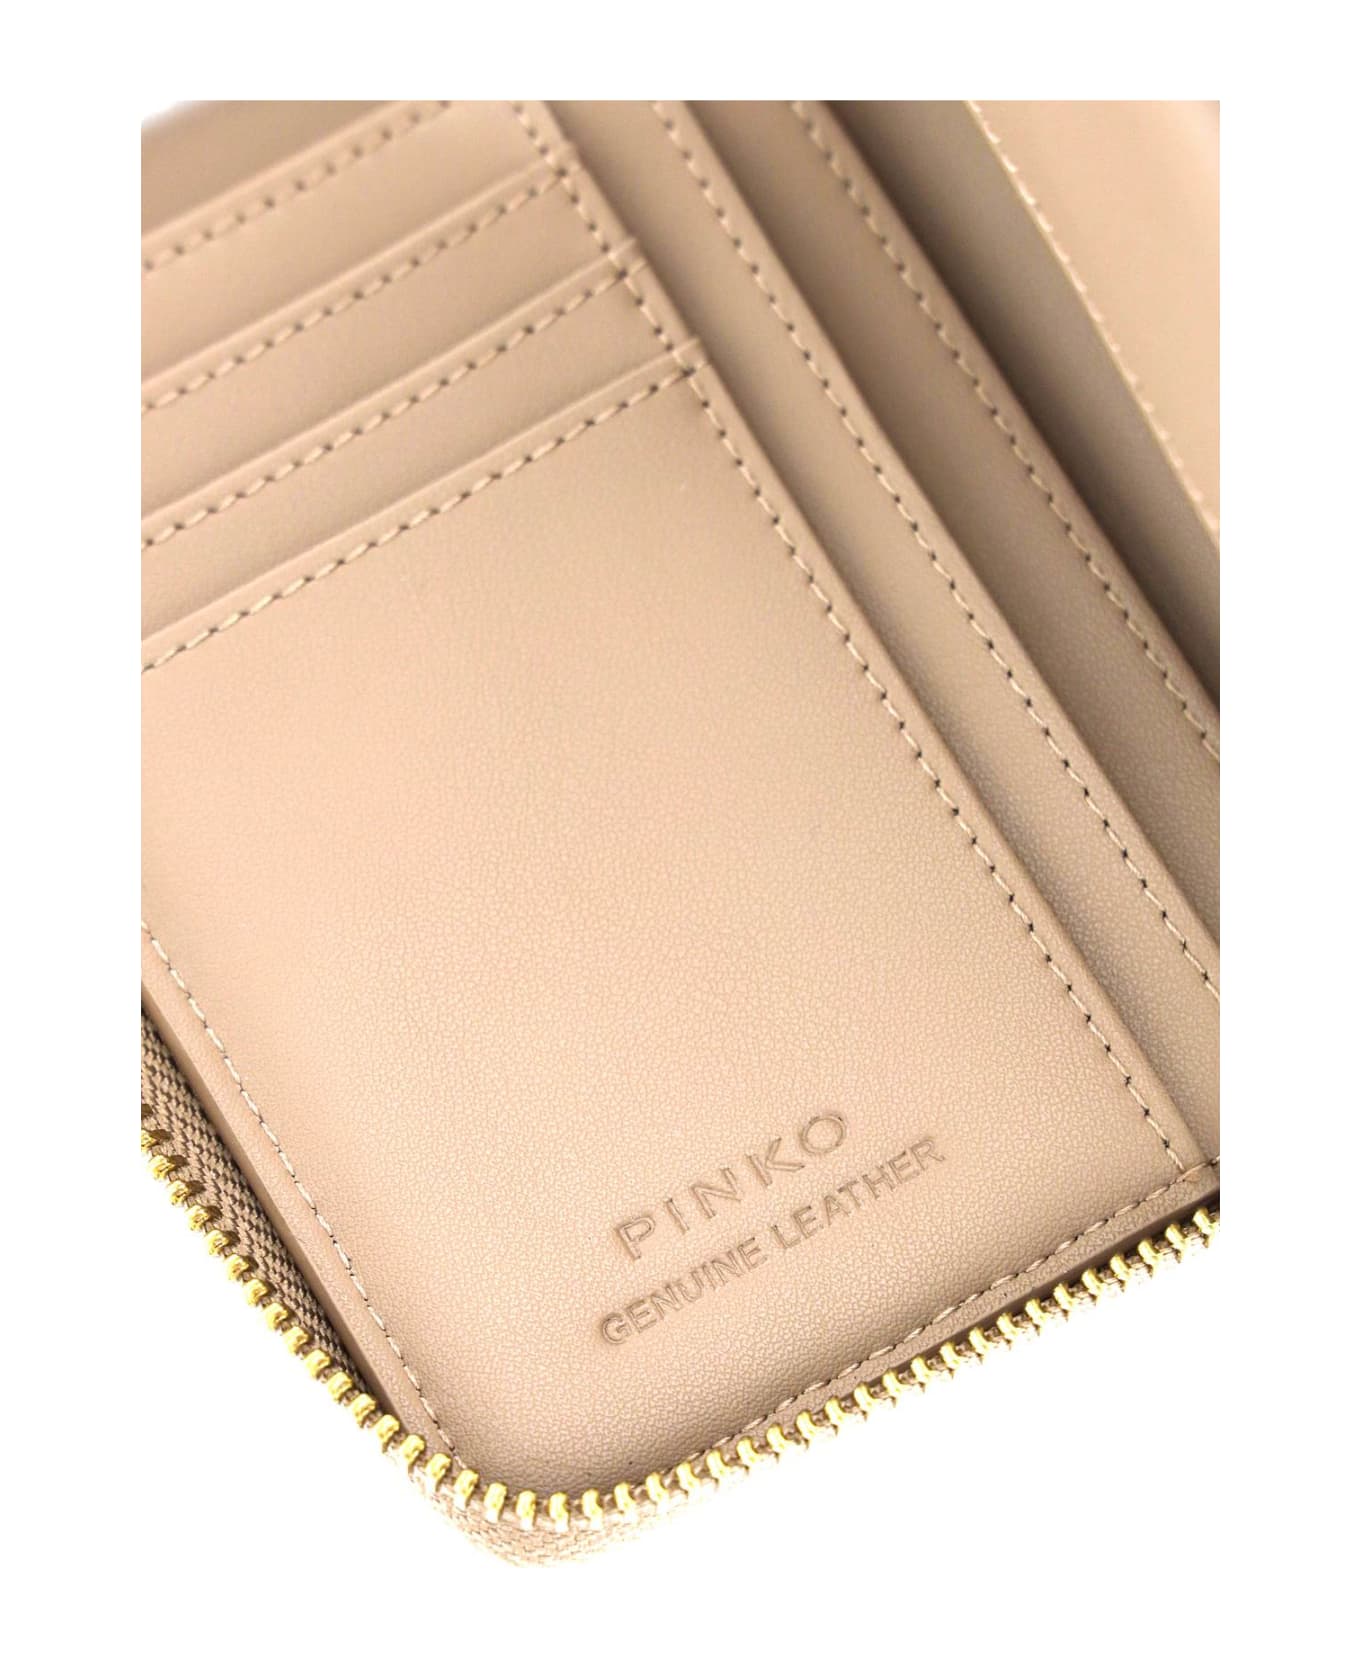 Pinko Leather Zip-around Wallet - BISCOTTO ZENZERO ANTIQUE GOLD (Beige)